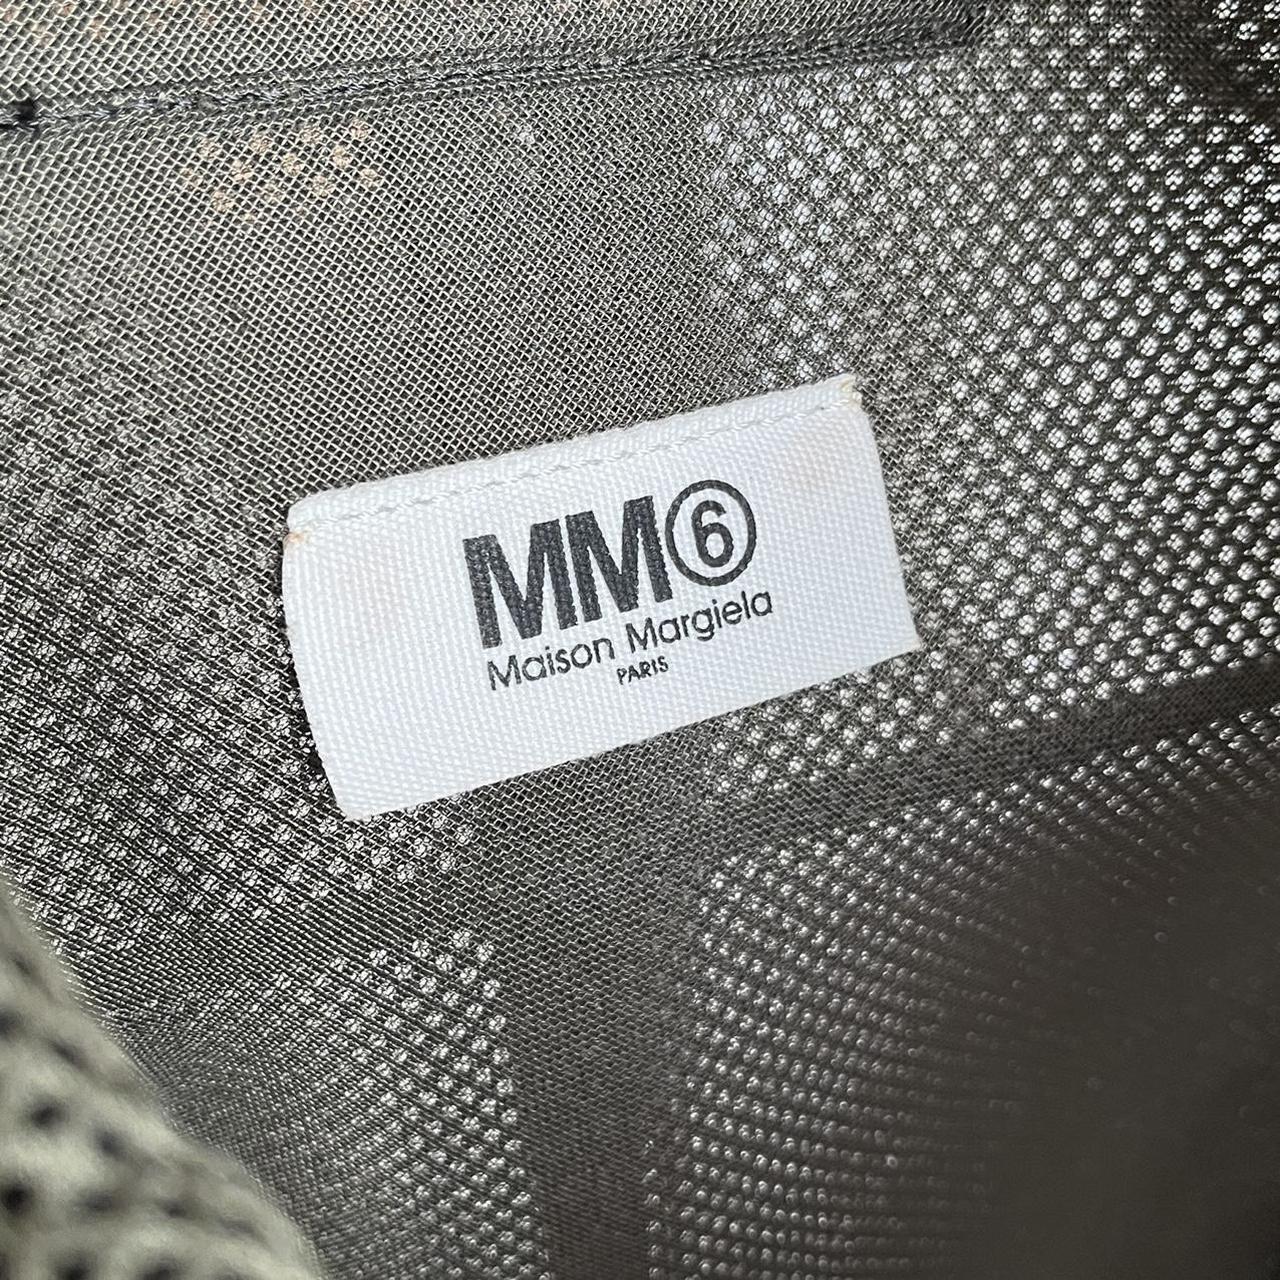 Product Image 4 - Maison Margiela MM6 Mesh backpack